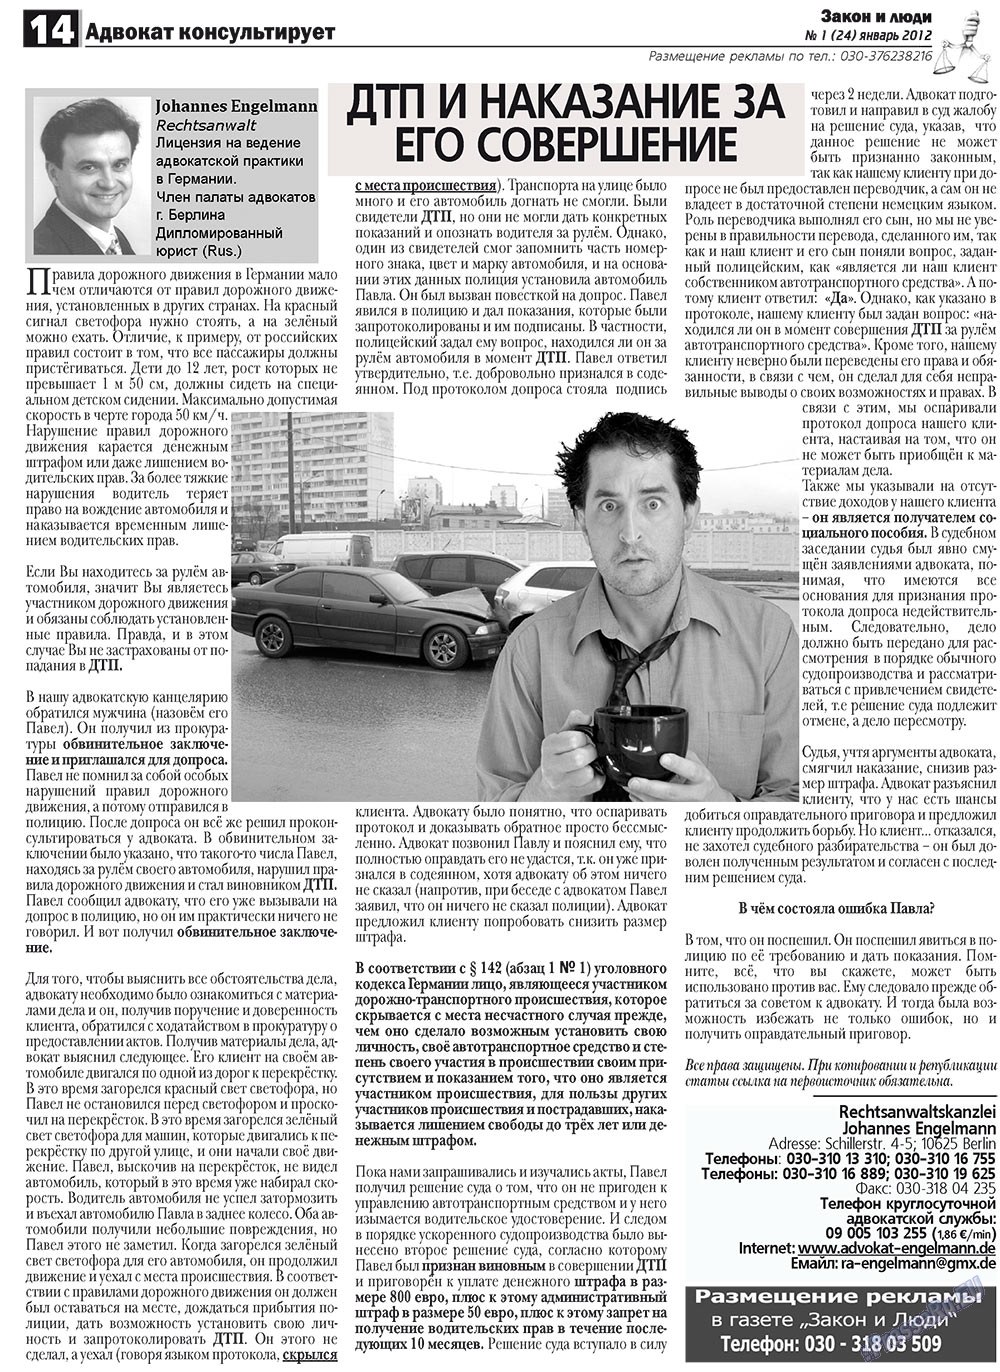 Закон и люди, газета. 2012 №1 стр.14